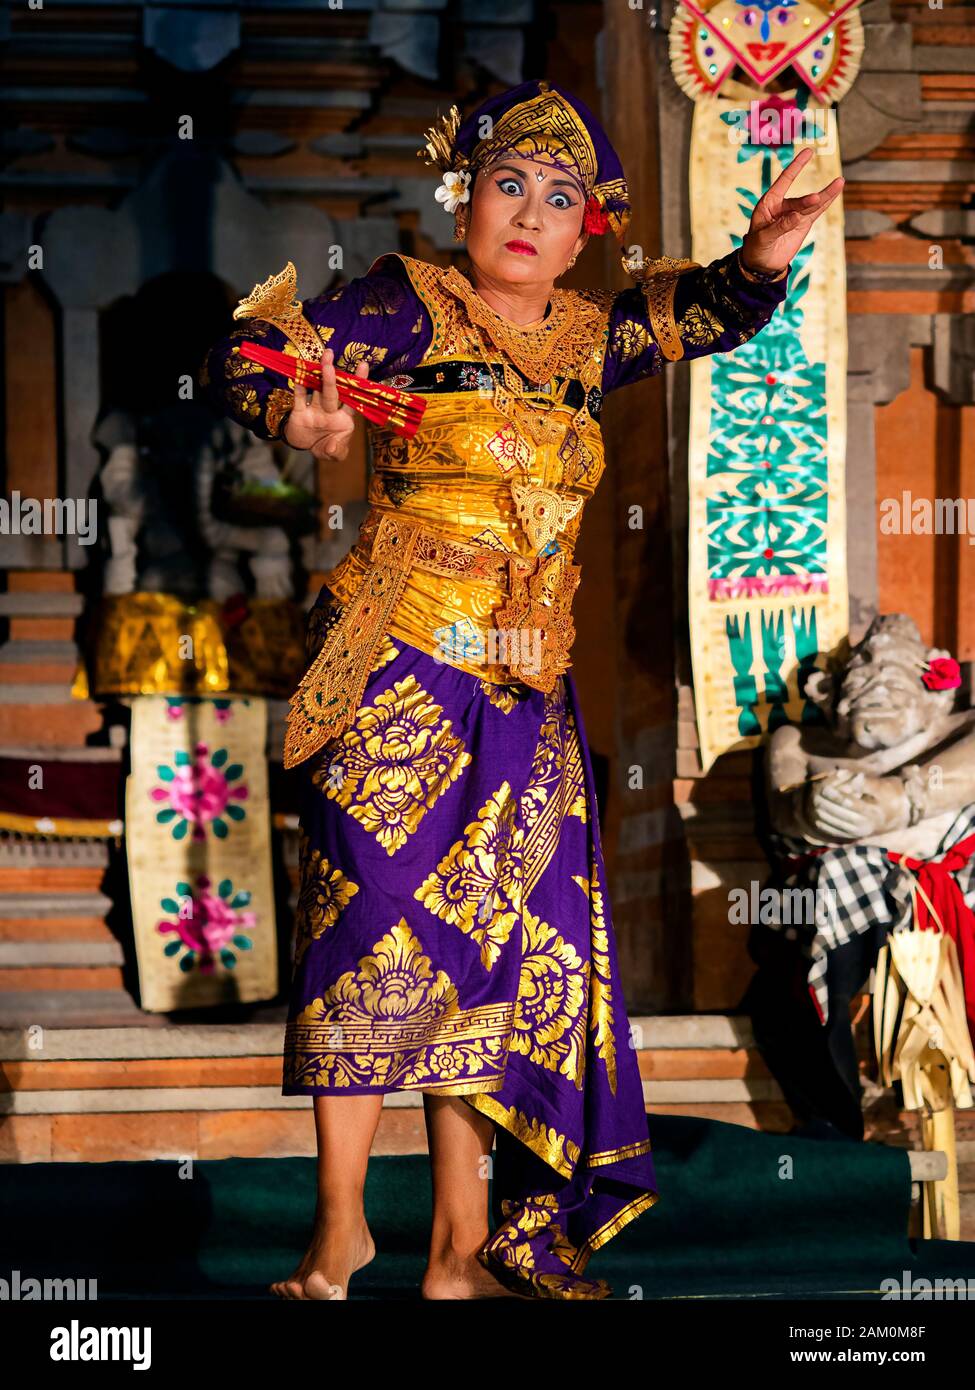 Bailarina balinesa que baila Legong con trajes tradicionales en el templo Pura Saraswati en Ubud, Bali, Indonesia. Foto de stock